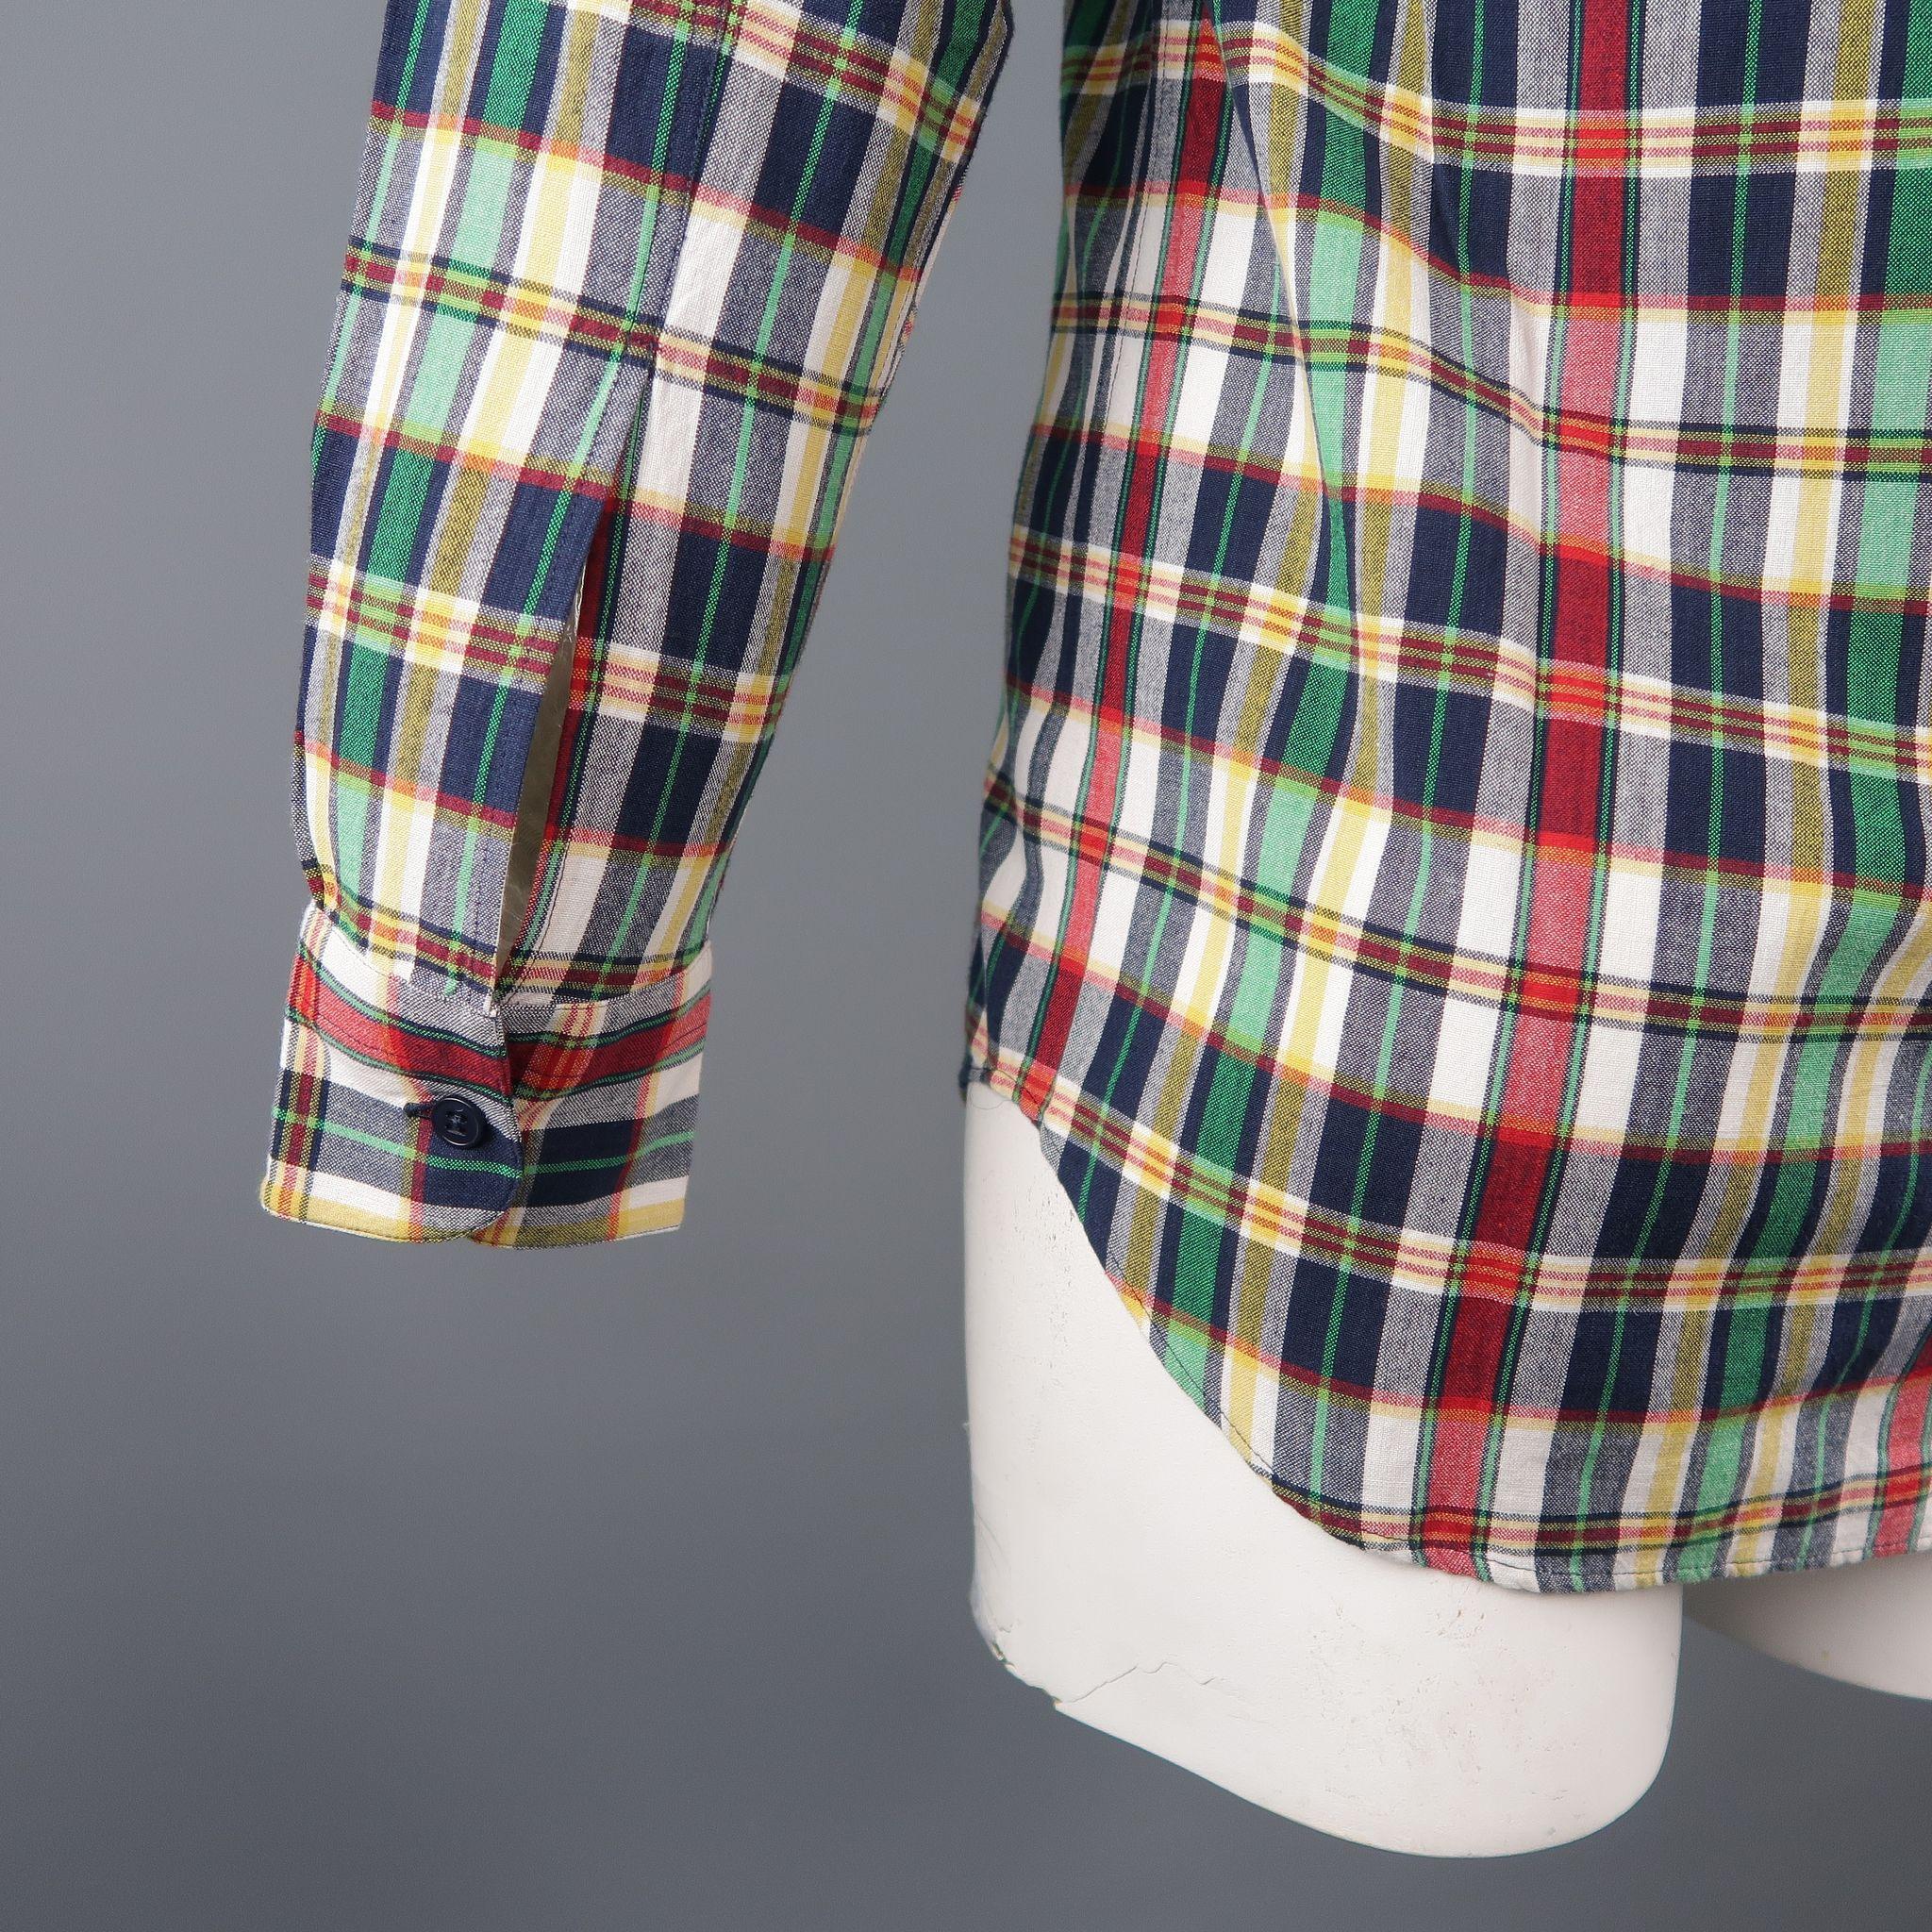 AGNES B. Size S Multi-Color Plaid Cotton Button Up Long Sleeve Shirt 2